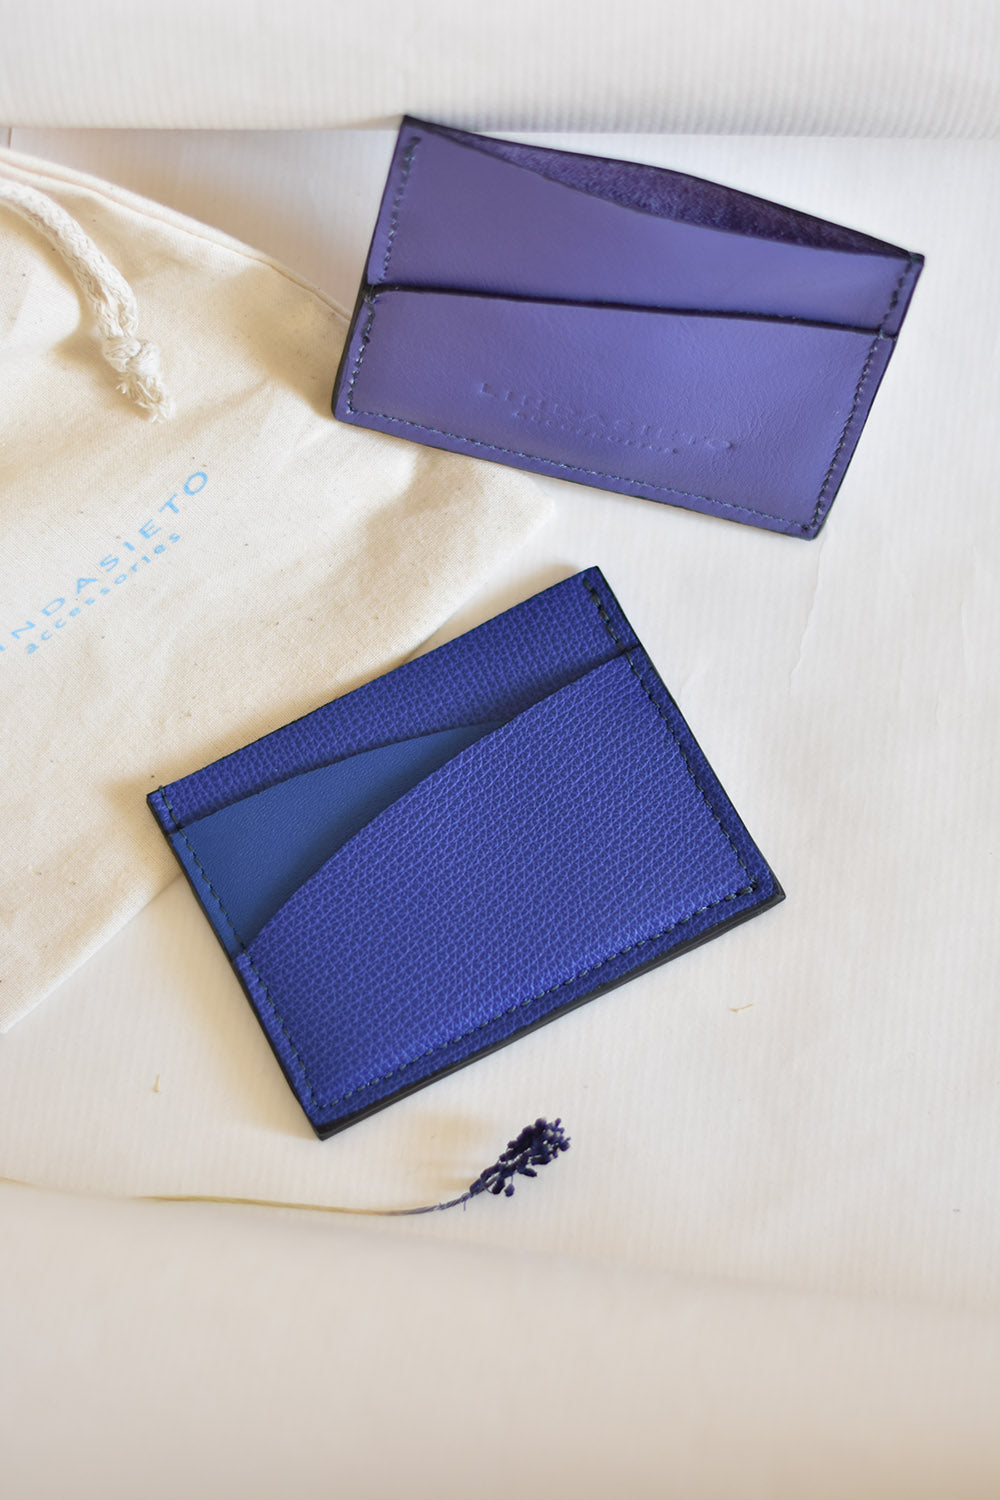 Ultramarine blue and purple leather cardholder wallets, on cotton gift bag with logo print. Színes, kék és lila bőr kártyatartók, ajándék csomagolással, textil zsákkal magyar tervezőtől.